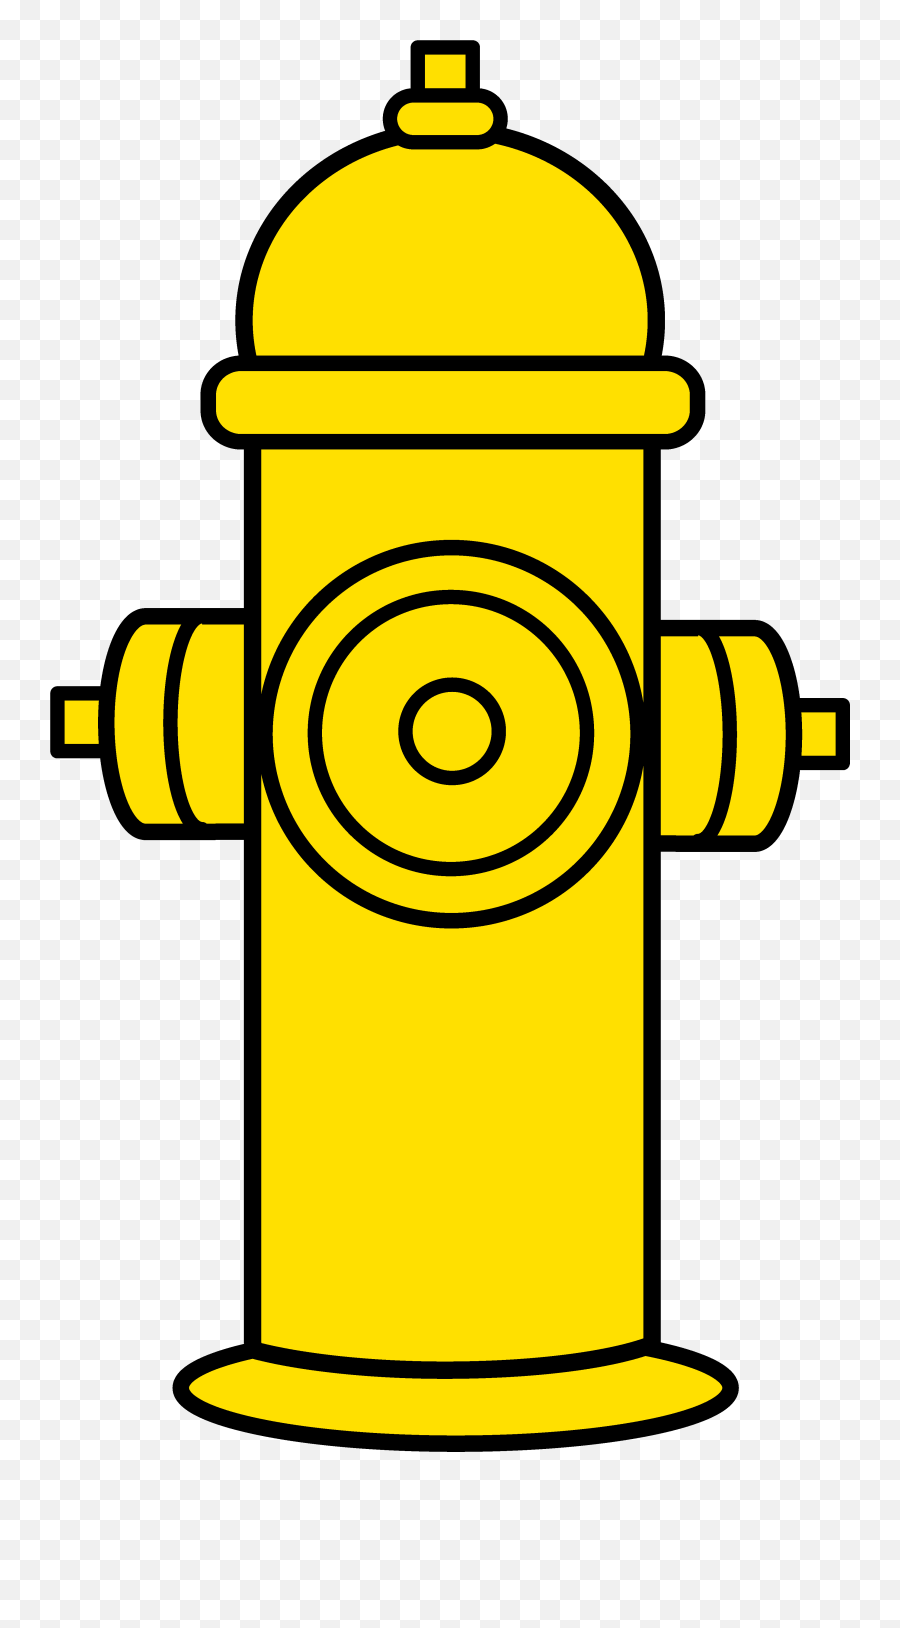 Free Fire Hydrant Clipart - Fire Hydrant Drawing Easy Emoji,Fire Hydrant Emoji